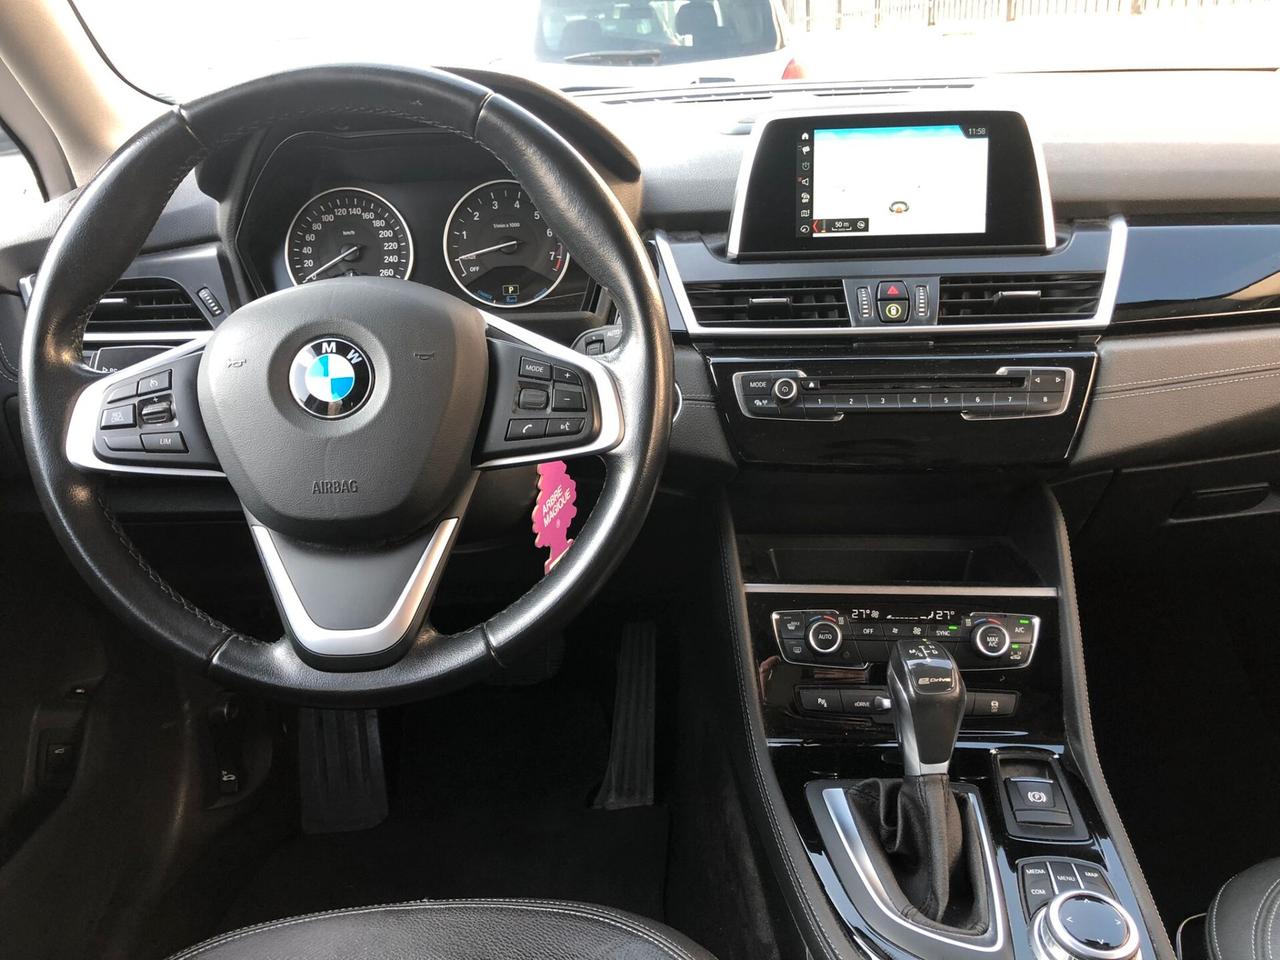 BMW 225 xe Active Tourer iPerformance Luxury - AUT/NAV/PDC